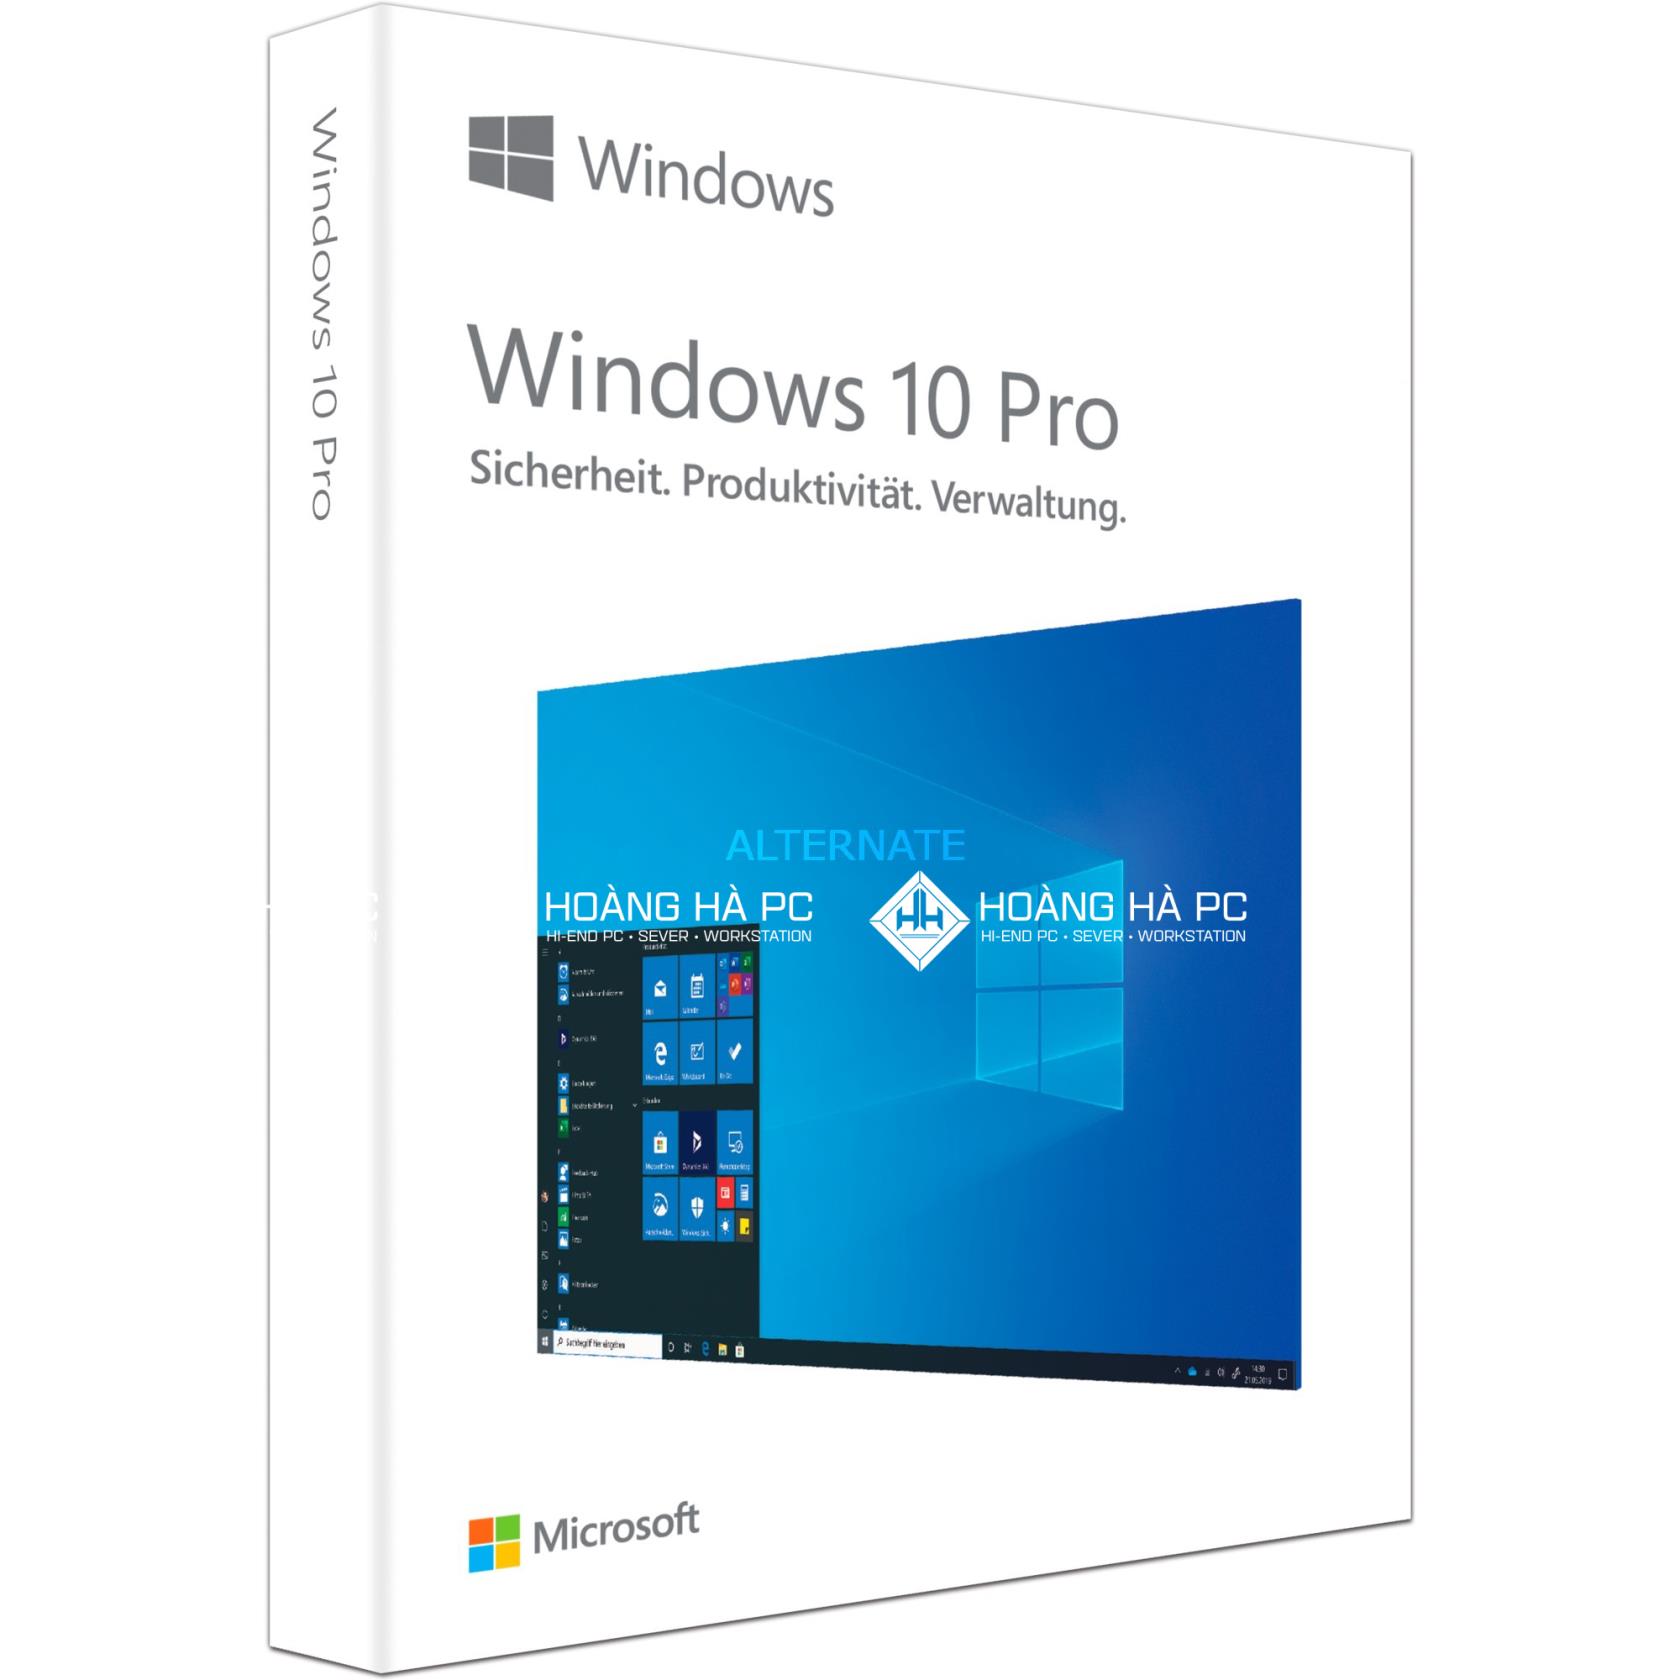 Versi Windows 10 Yang Paling Ringan Dan Terbaik Yang Harus Saya Pasang Untuk Komputer Hari Ini?